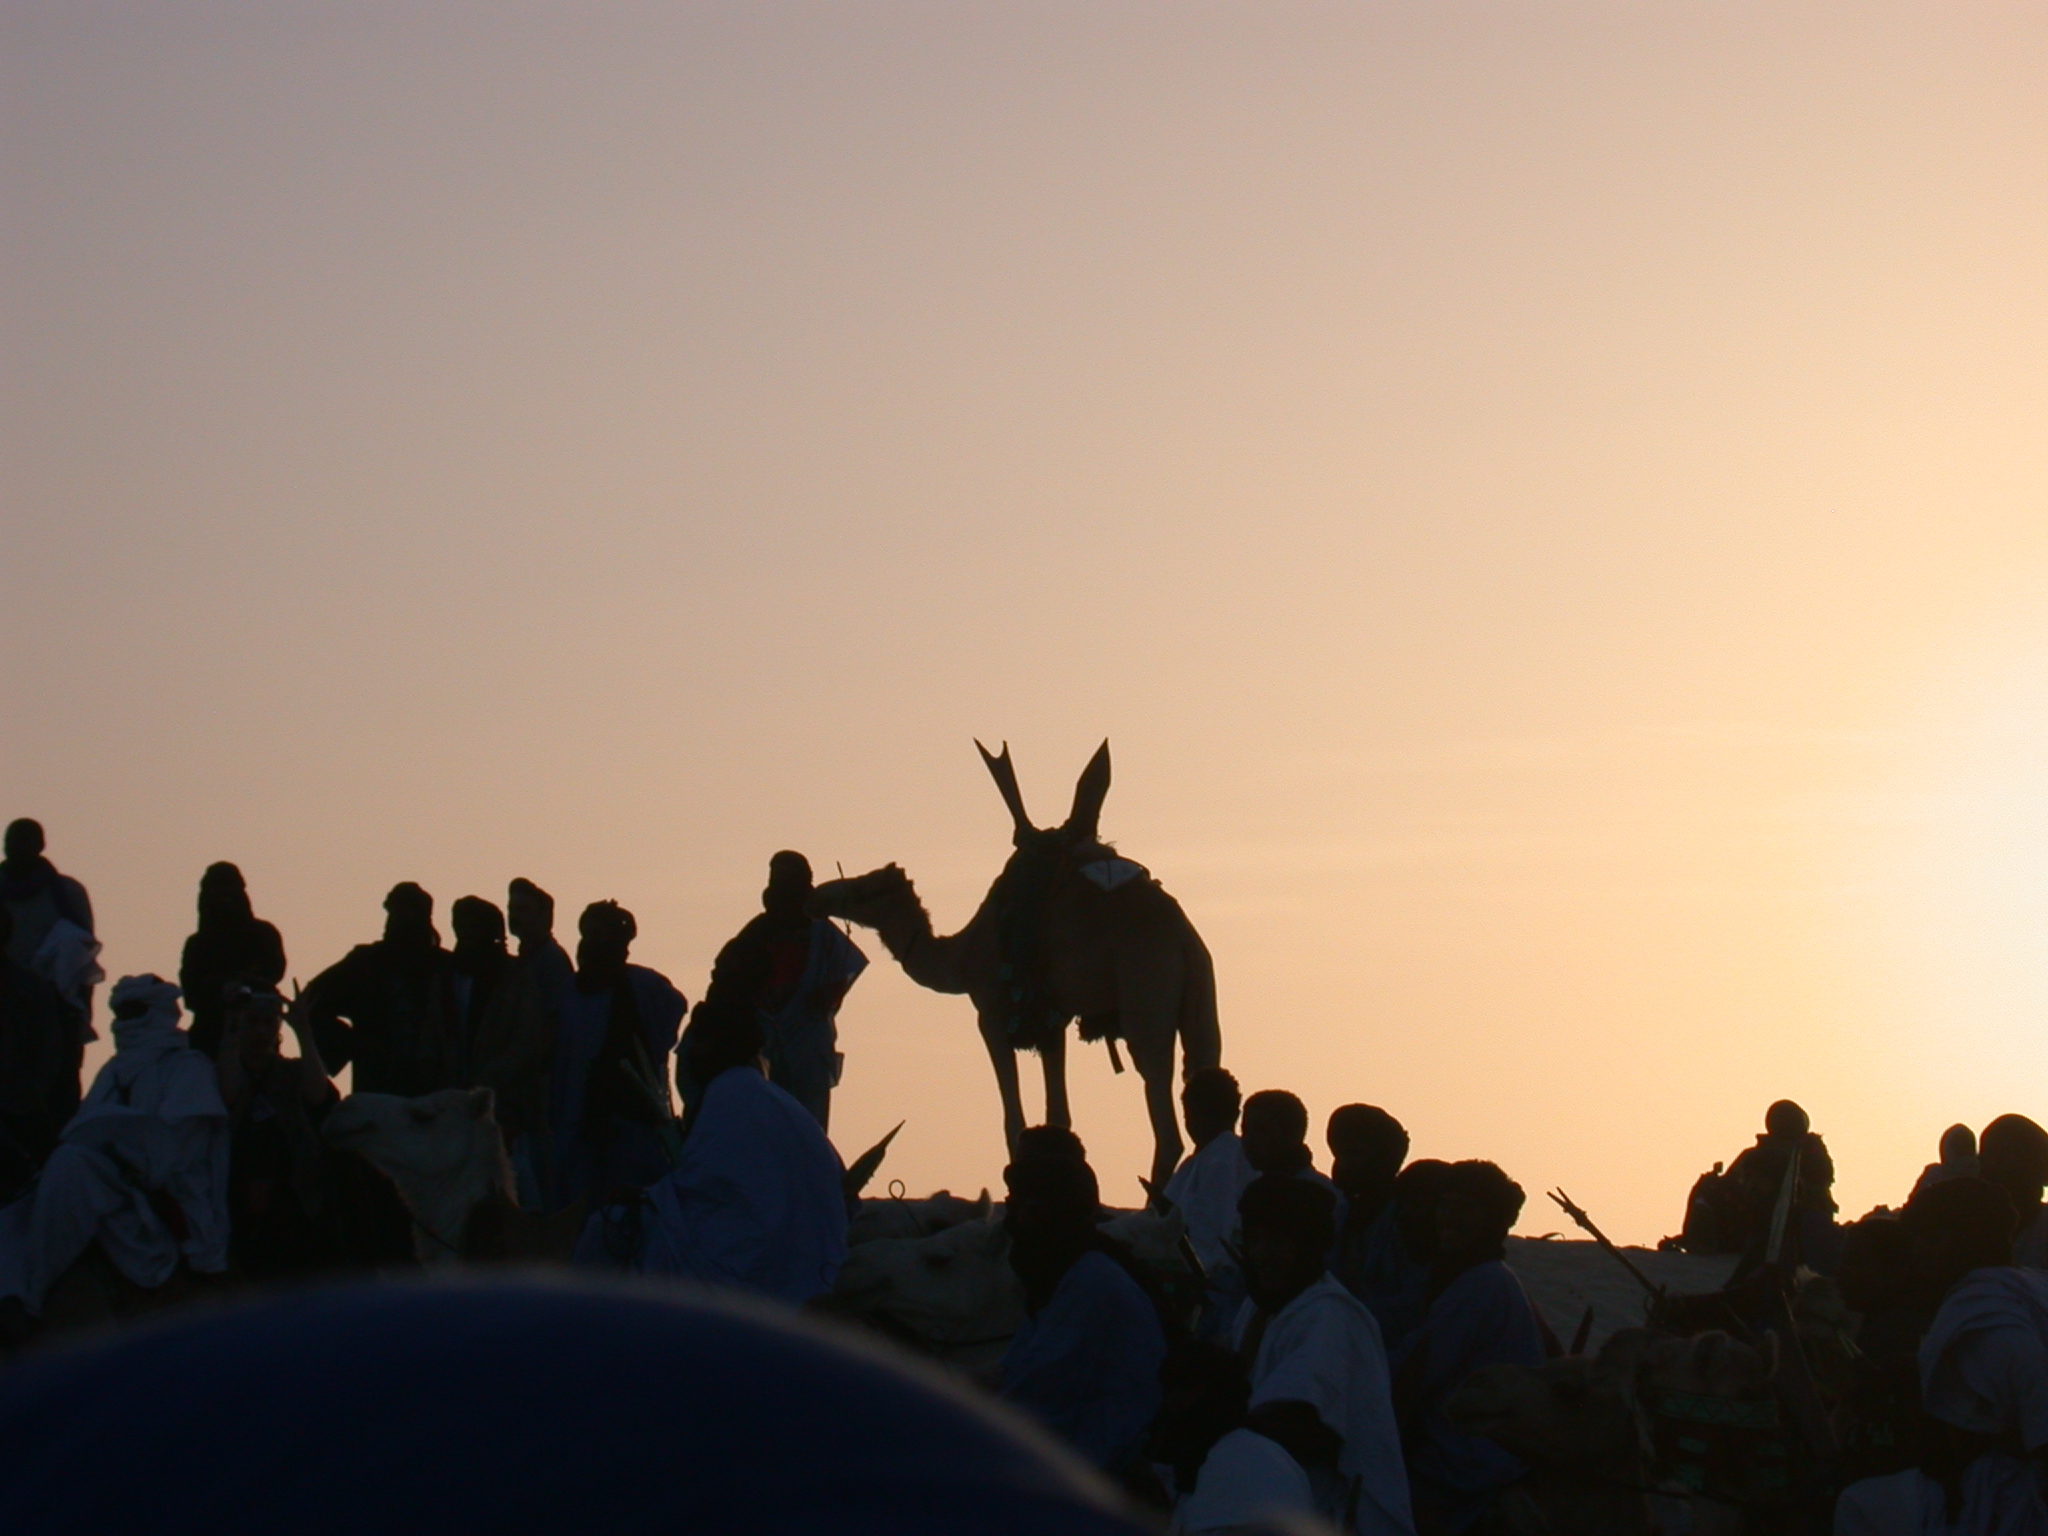 Camel in Silhouette on Dune at Sunset, Festival in the Desert, Essakane, Mali